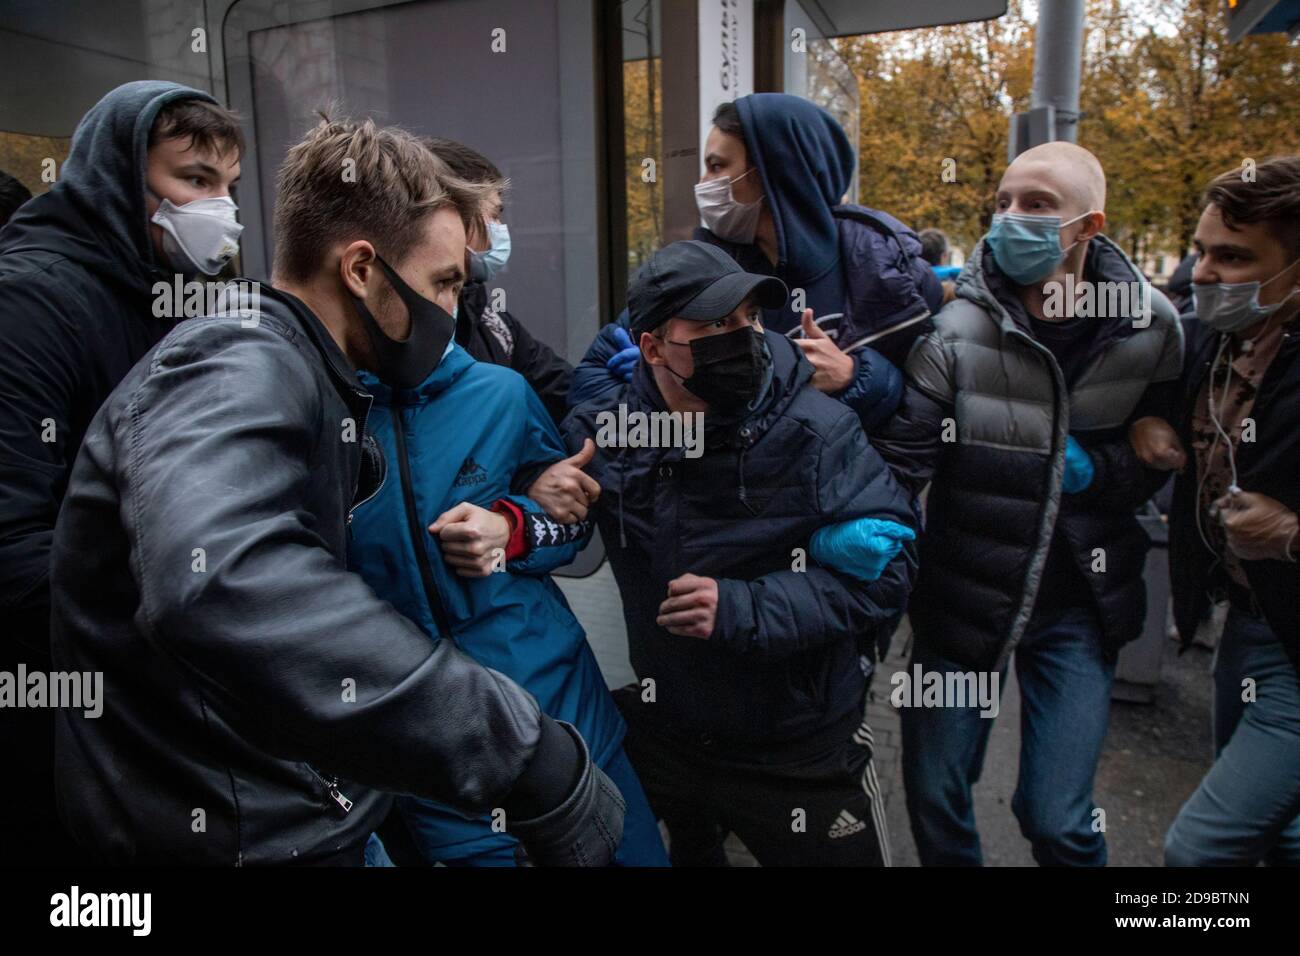 Moskau, Russland. 4. November 2020 Jugendliche, die Gesichtsmasken tragen, um die Ausbreitung des Coronavirus einzudämmen, nehmen am Tag der Nationalen Einheit in Moskau, Russland, an einer Kundgebung Teil, die von Nationalisten und Aktivisten rechtsextremen politischen Gruppen organisiert wird Stockfoto